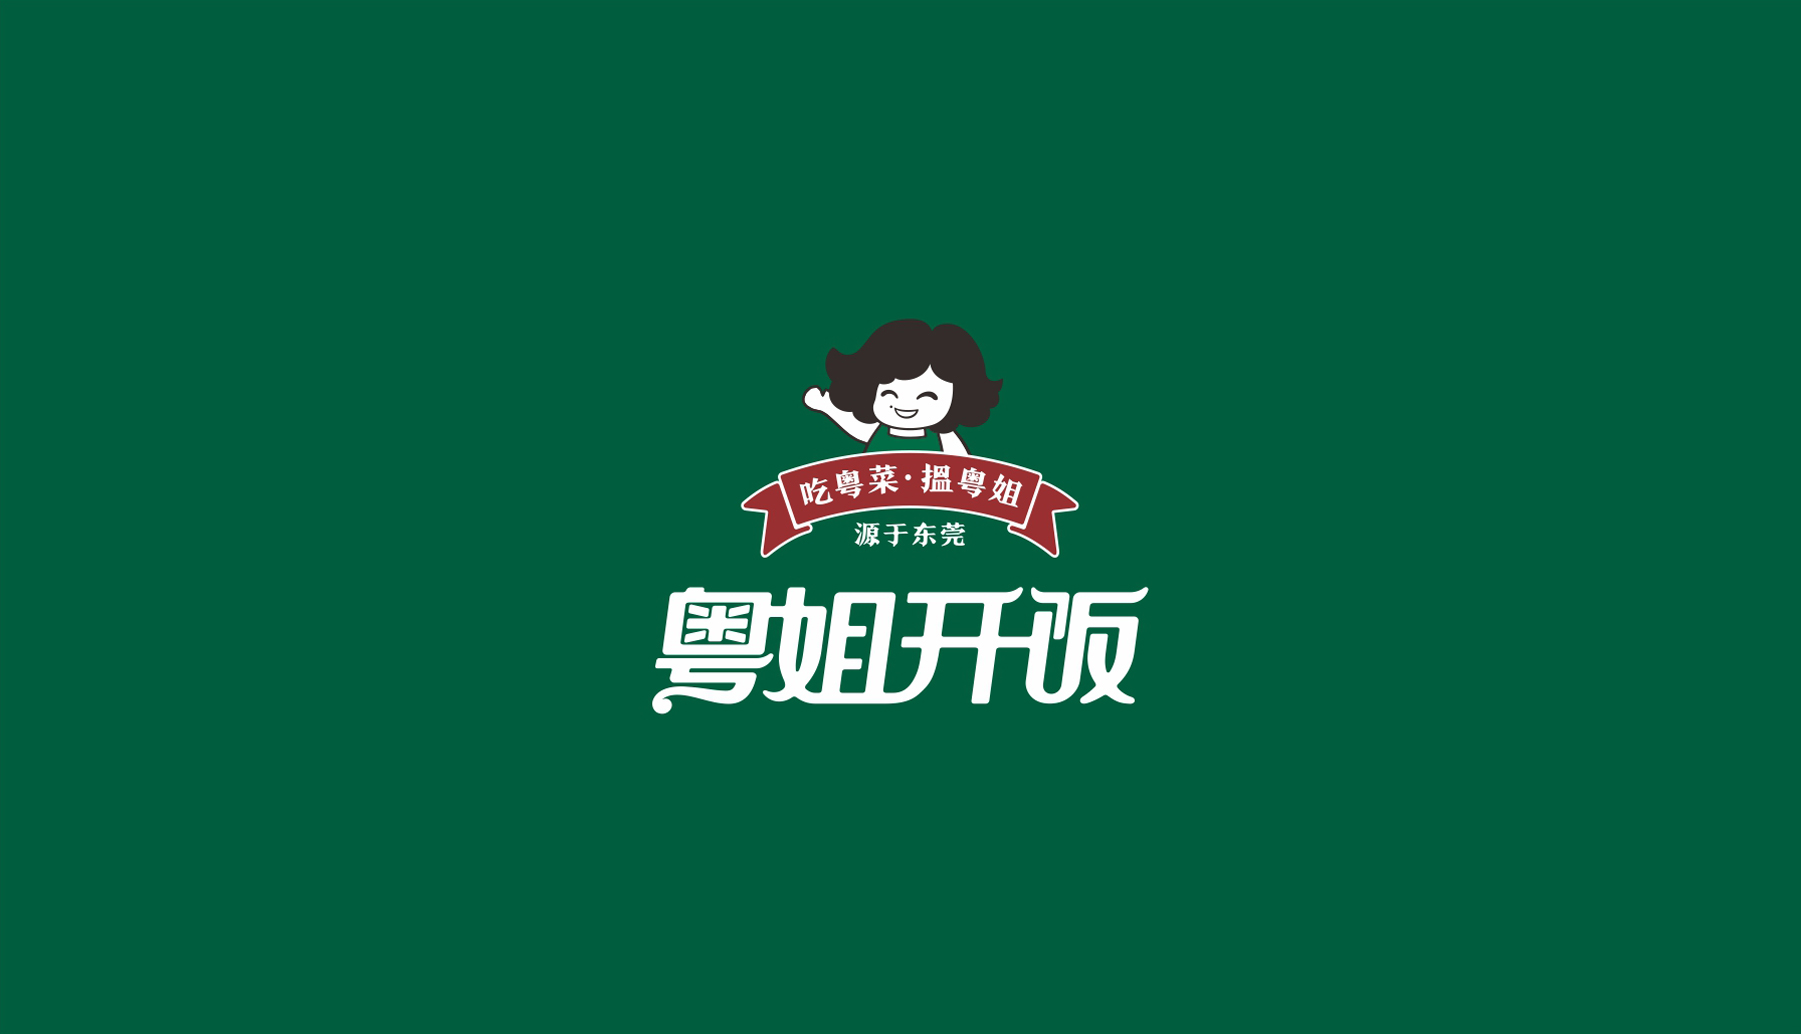 粤姐开饭东莞餐饮品牌logo设计整体展示